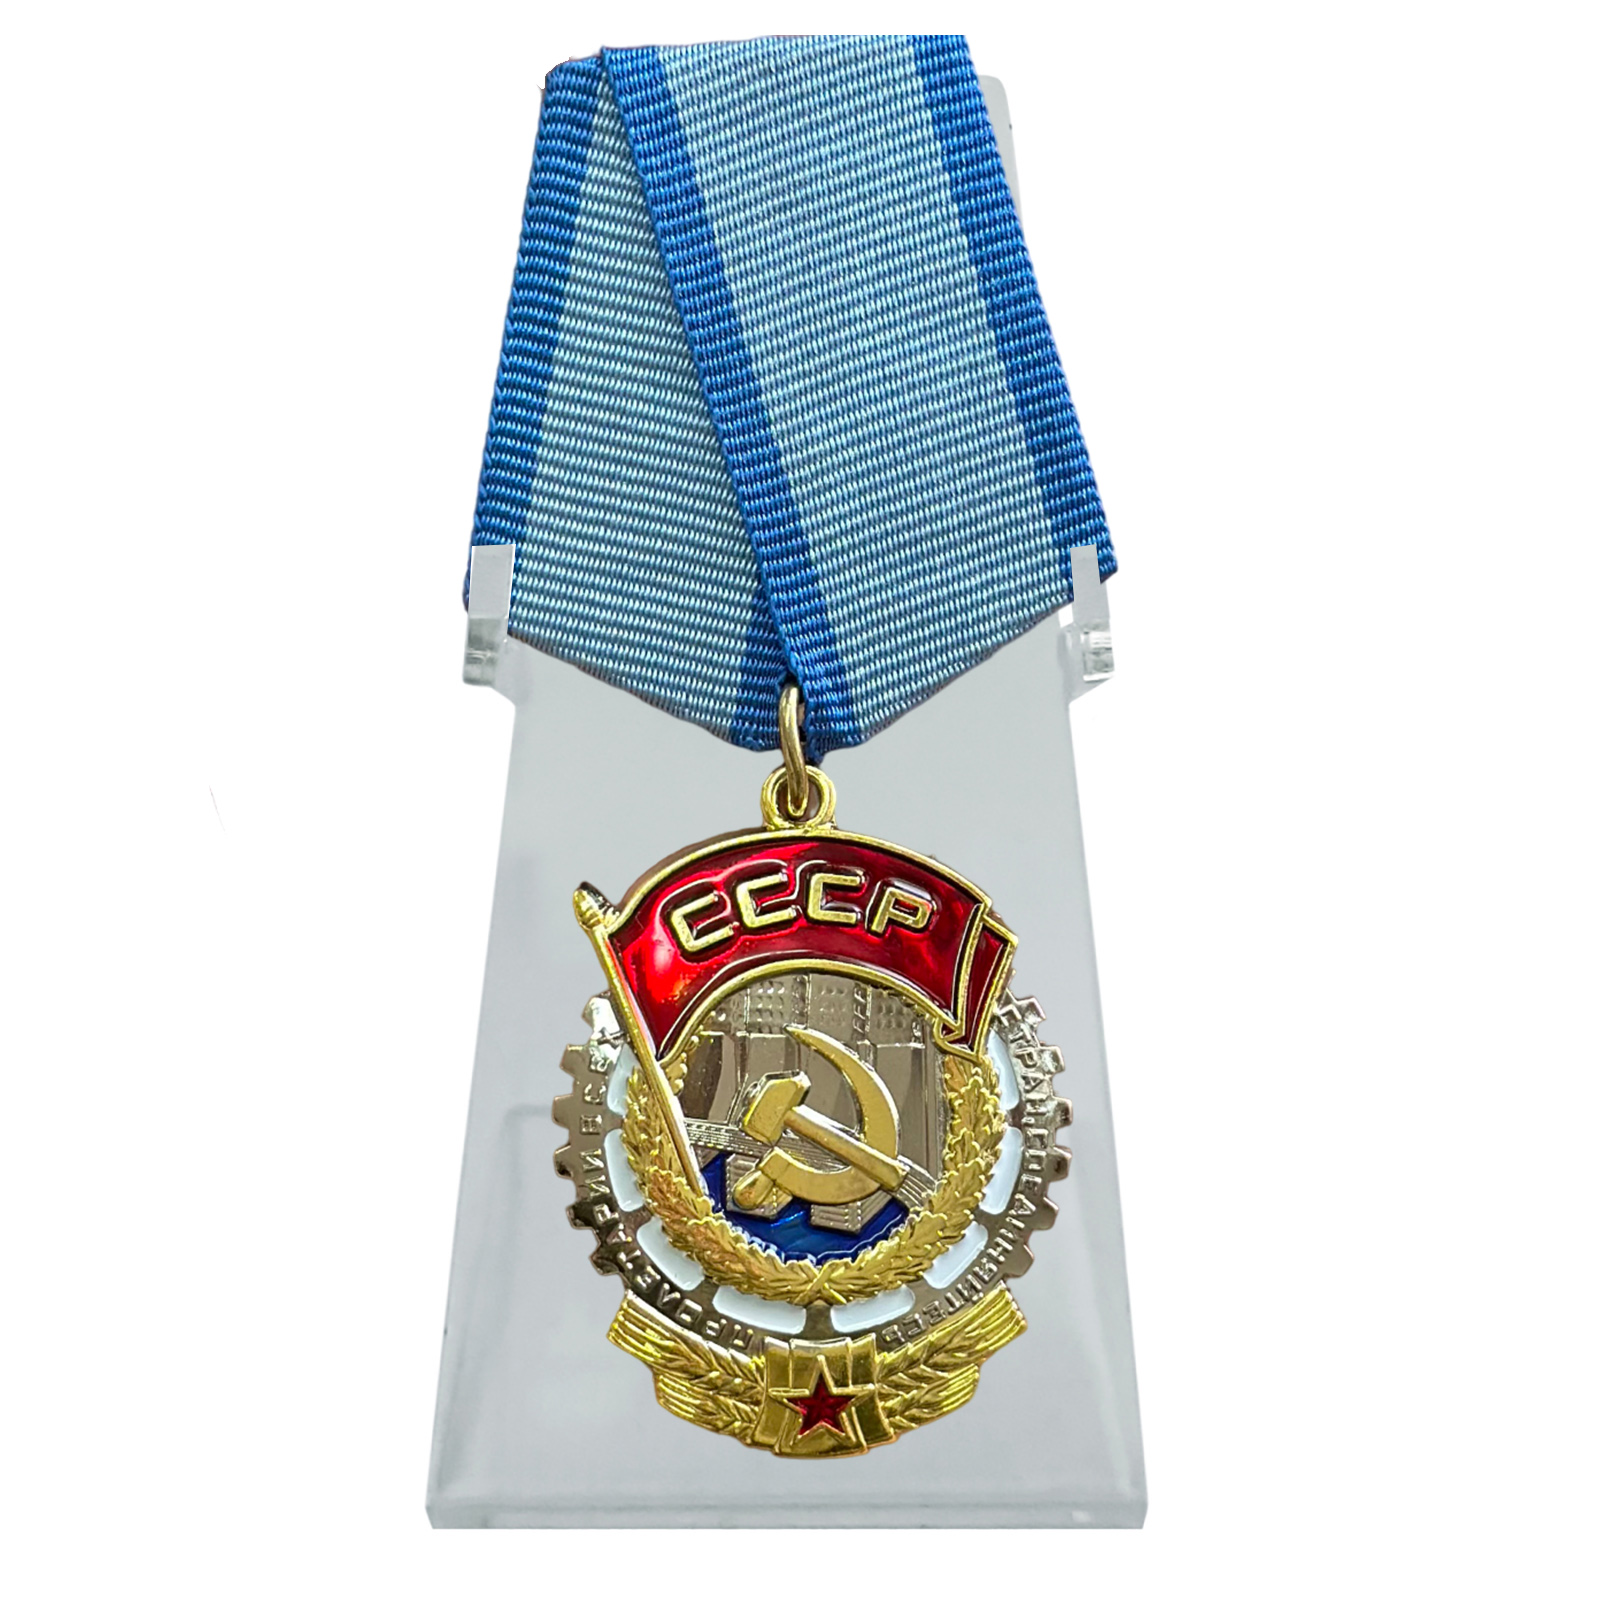 Орден Трудового Красного знамени на подставке